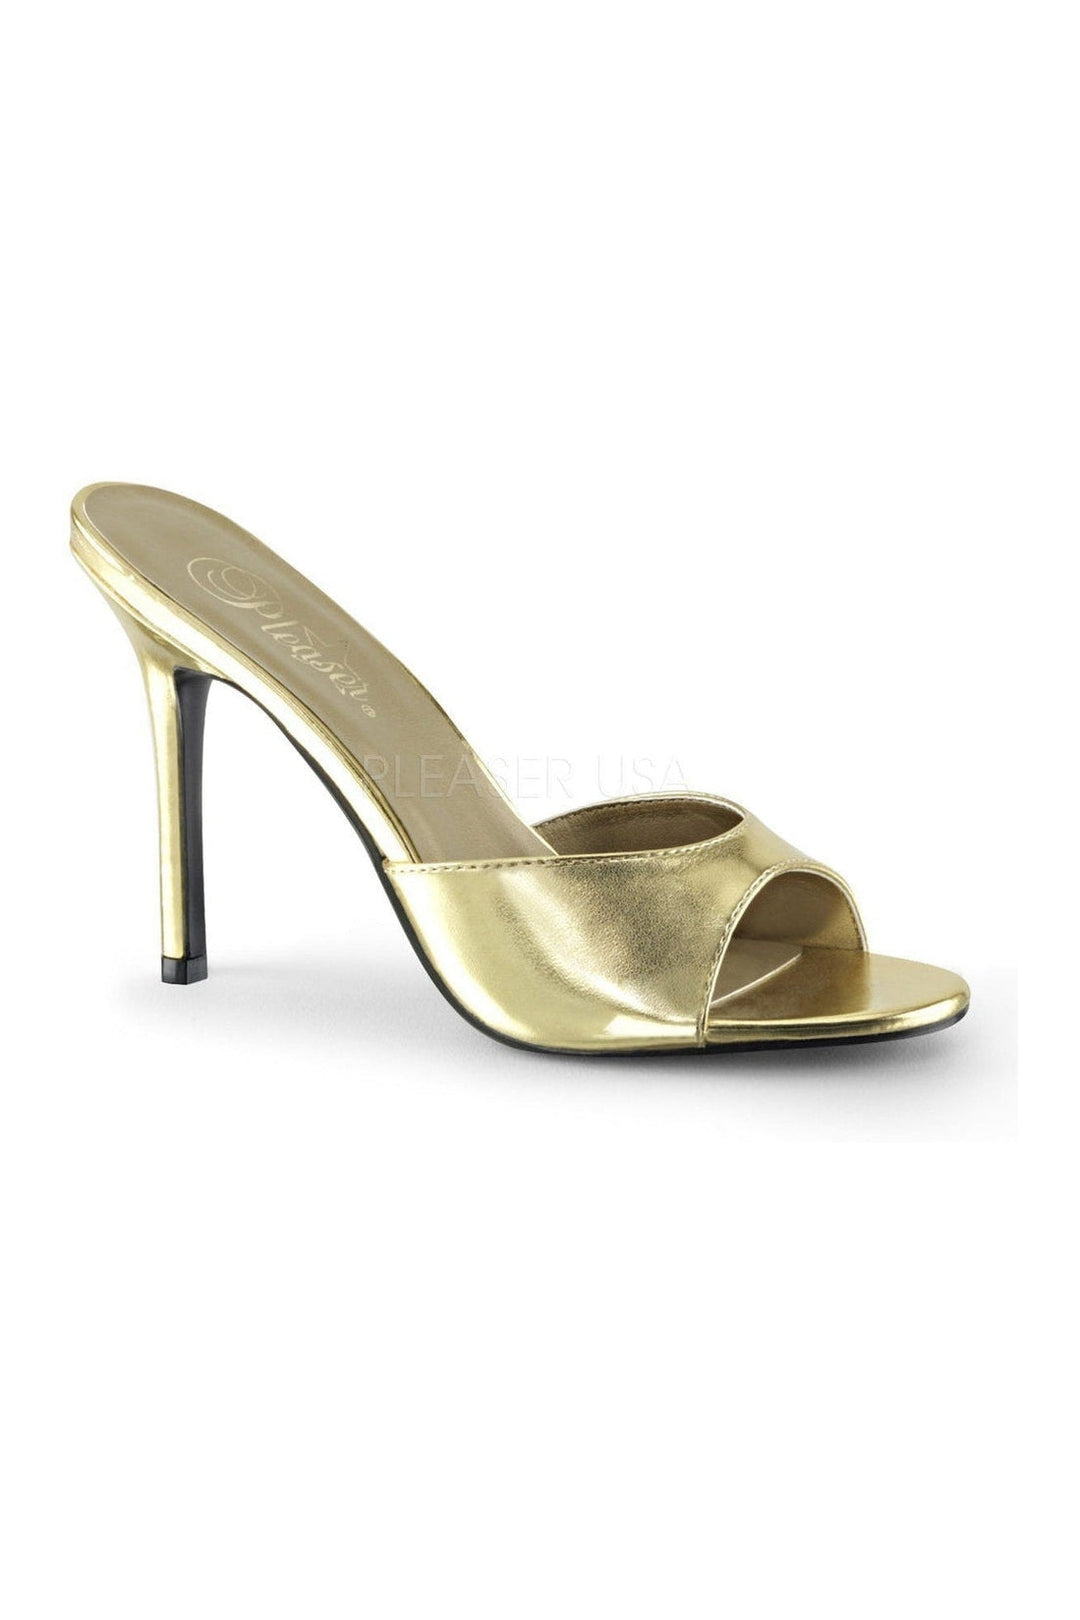 CLASSIQUE-01 Slide | Gold Faux Leather-Pleaser-Gold-Slides-SEXYSHOES.COM